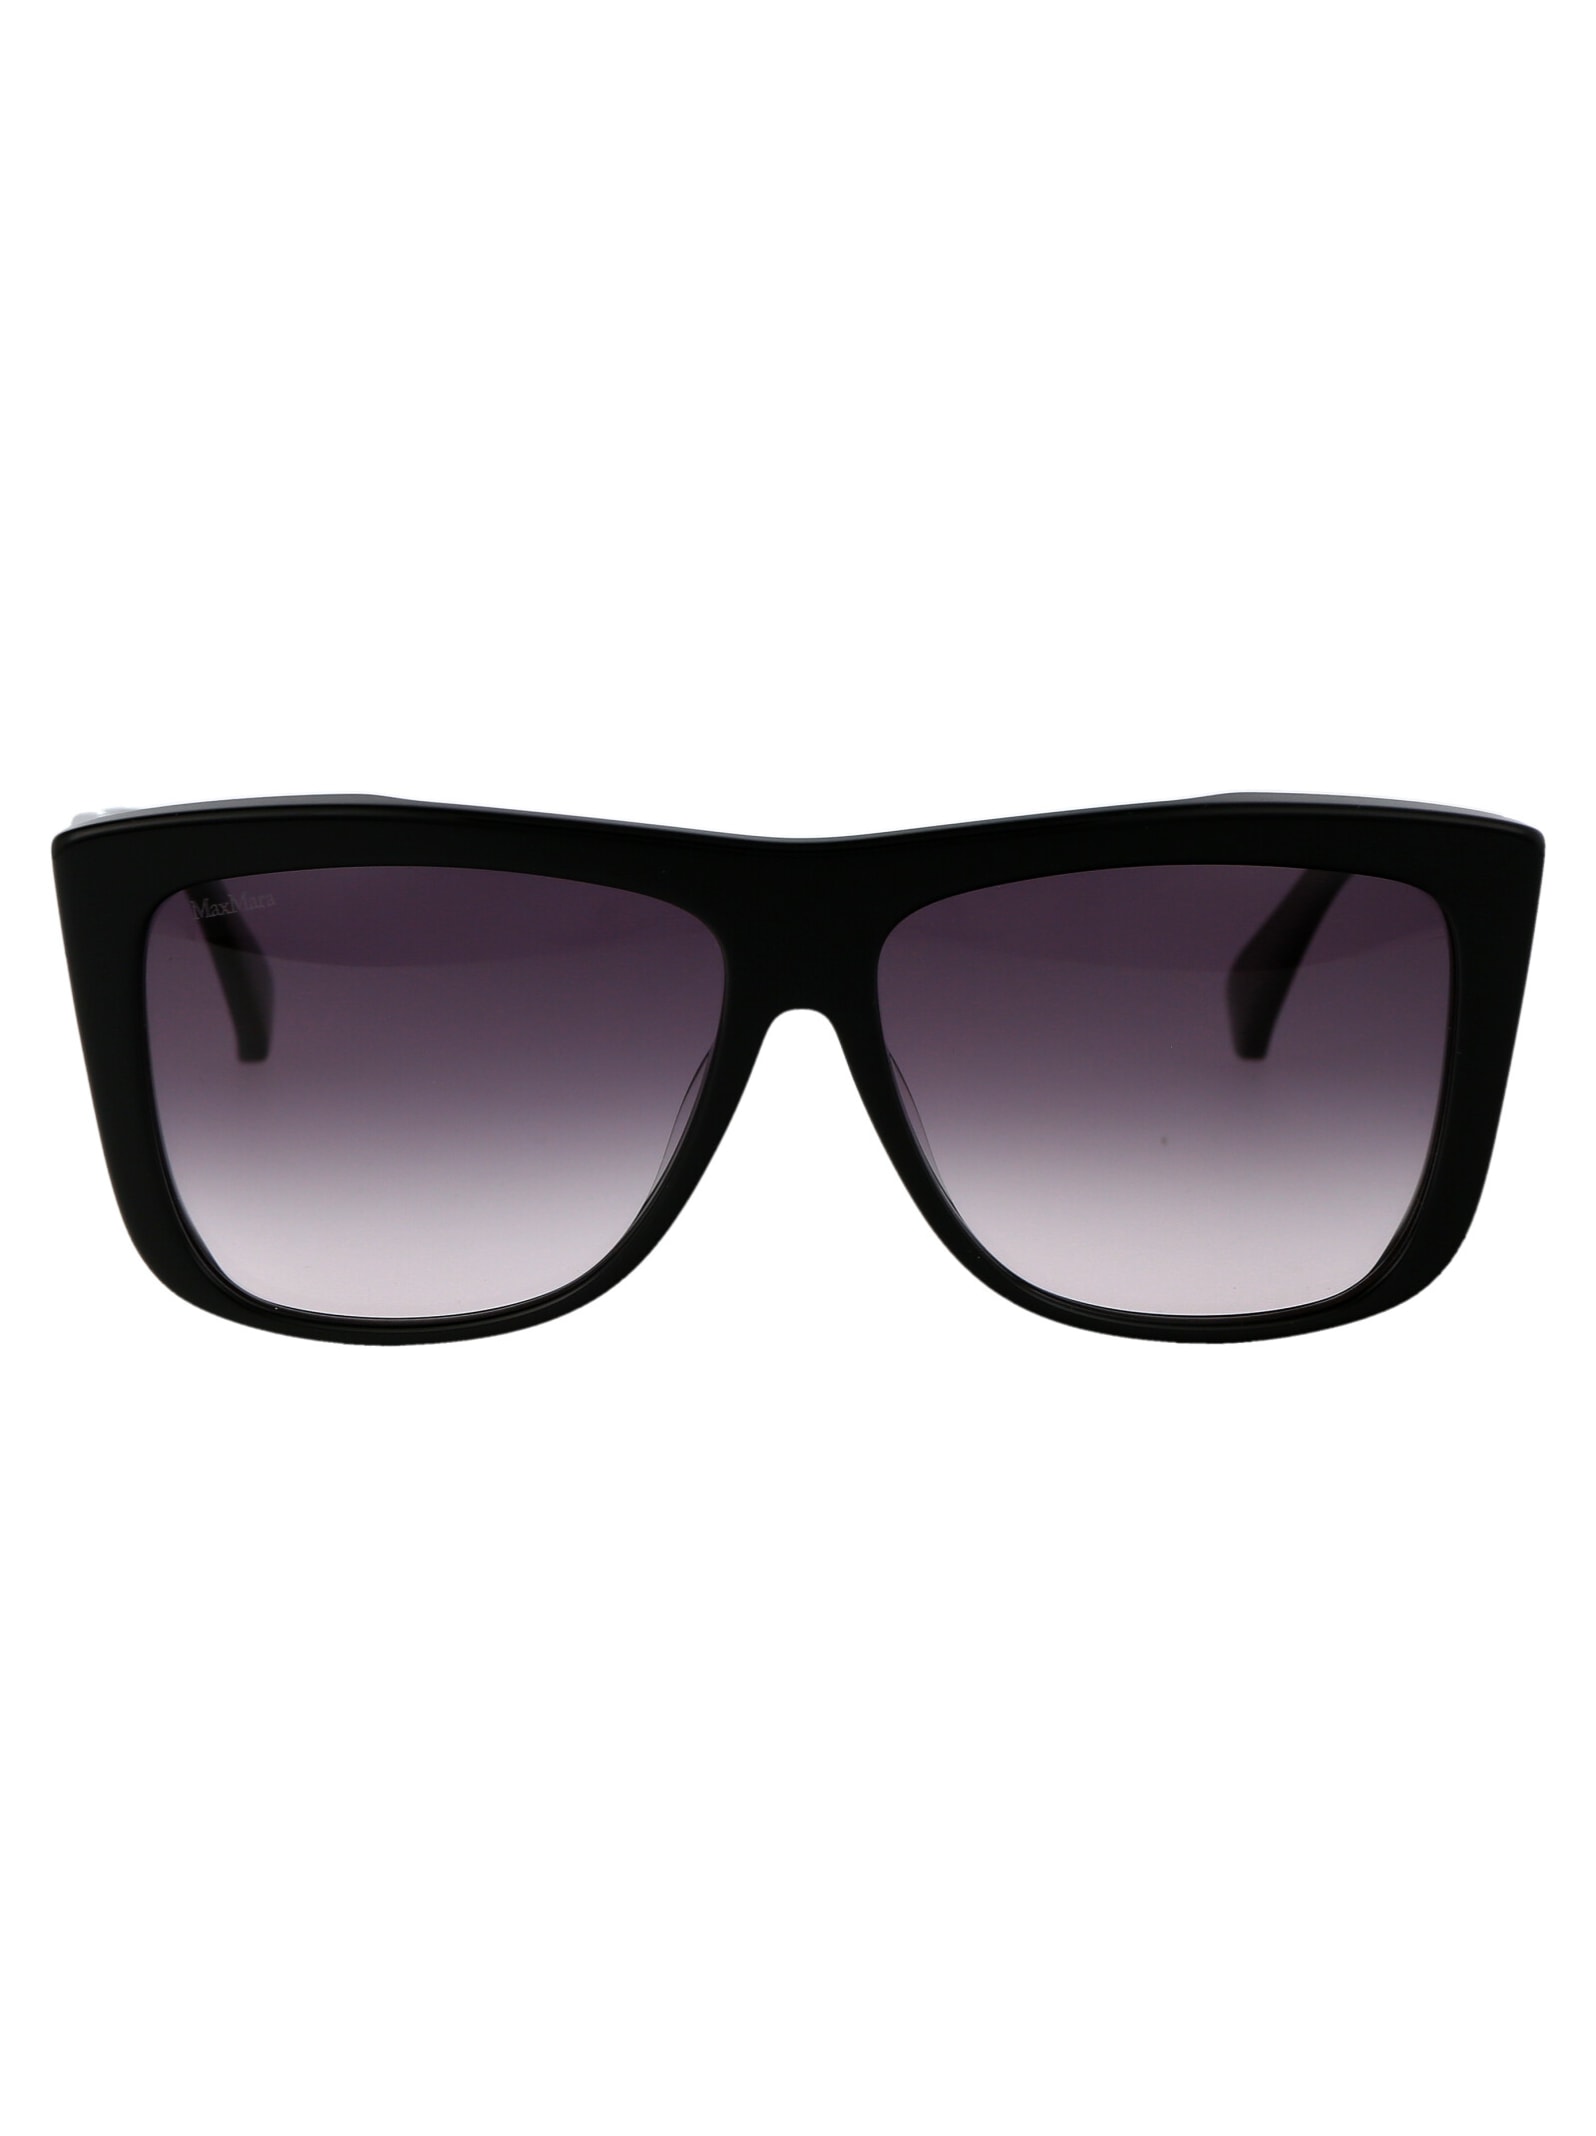 Shop Max Mara Lee1 Sunglasses In 01b Nero Lucido/fumo Grad